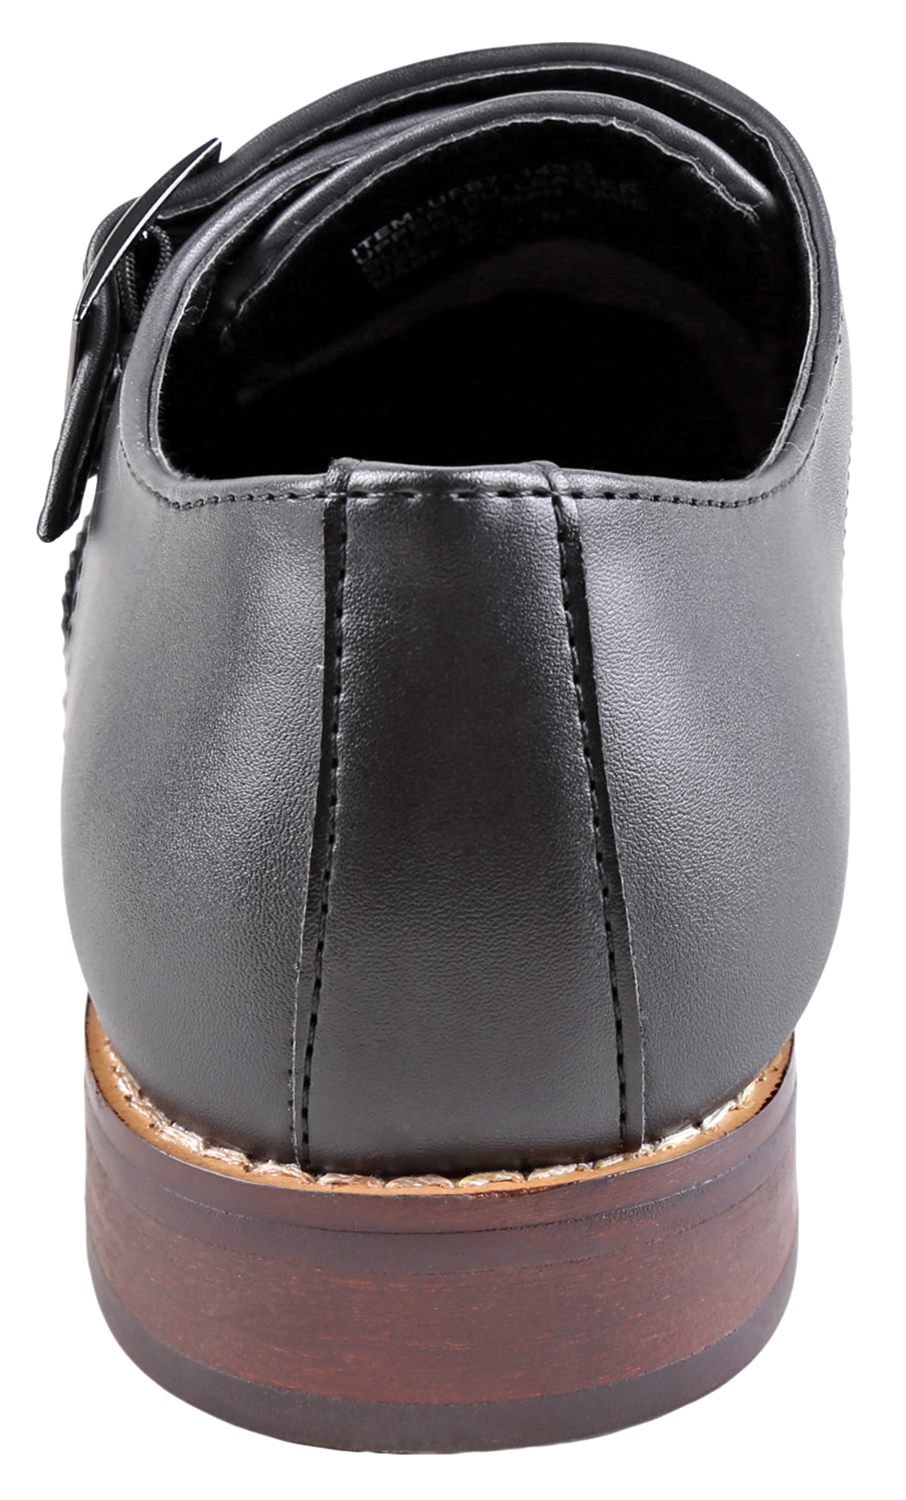 Urban Fox Allen Men's Dress Shoe | Double Monk Strap | Brogue | Wingtip Shoes for Men | Black 13 M US - image 4 of 7